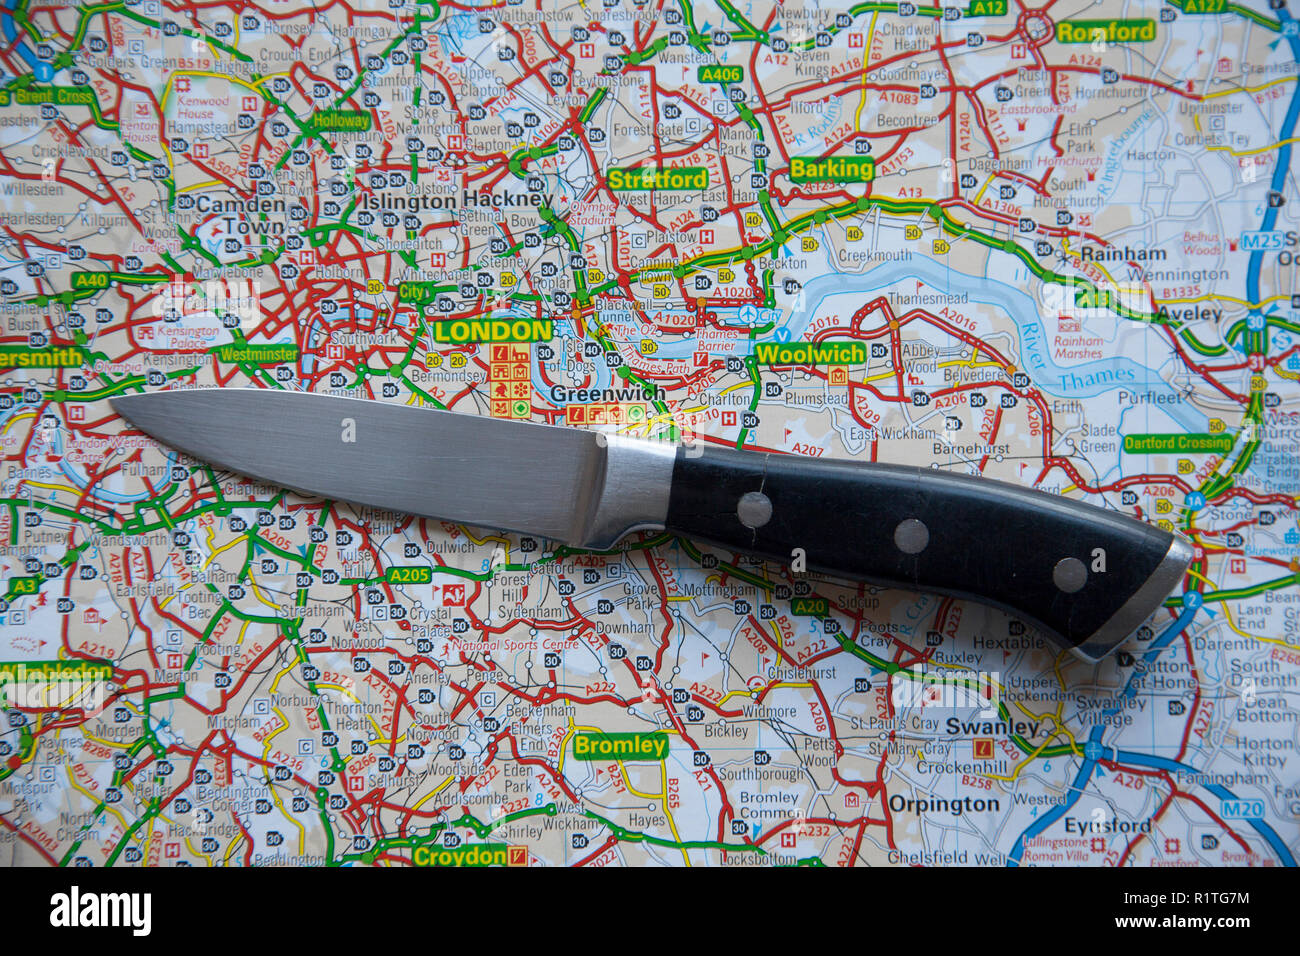 LONDON, GROSSBRITANNIEN, 14. NOVEMBER 2018: ein Messer auf einem Stadtplan von London, England. Messer Kriminalität in London Konzept Stockfoto